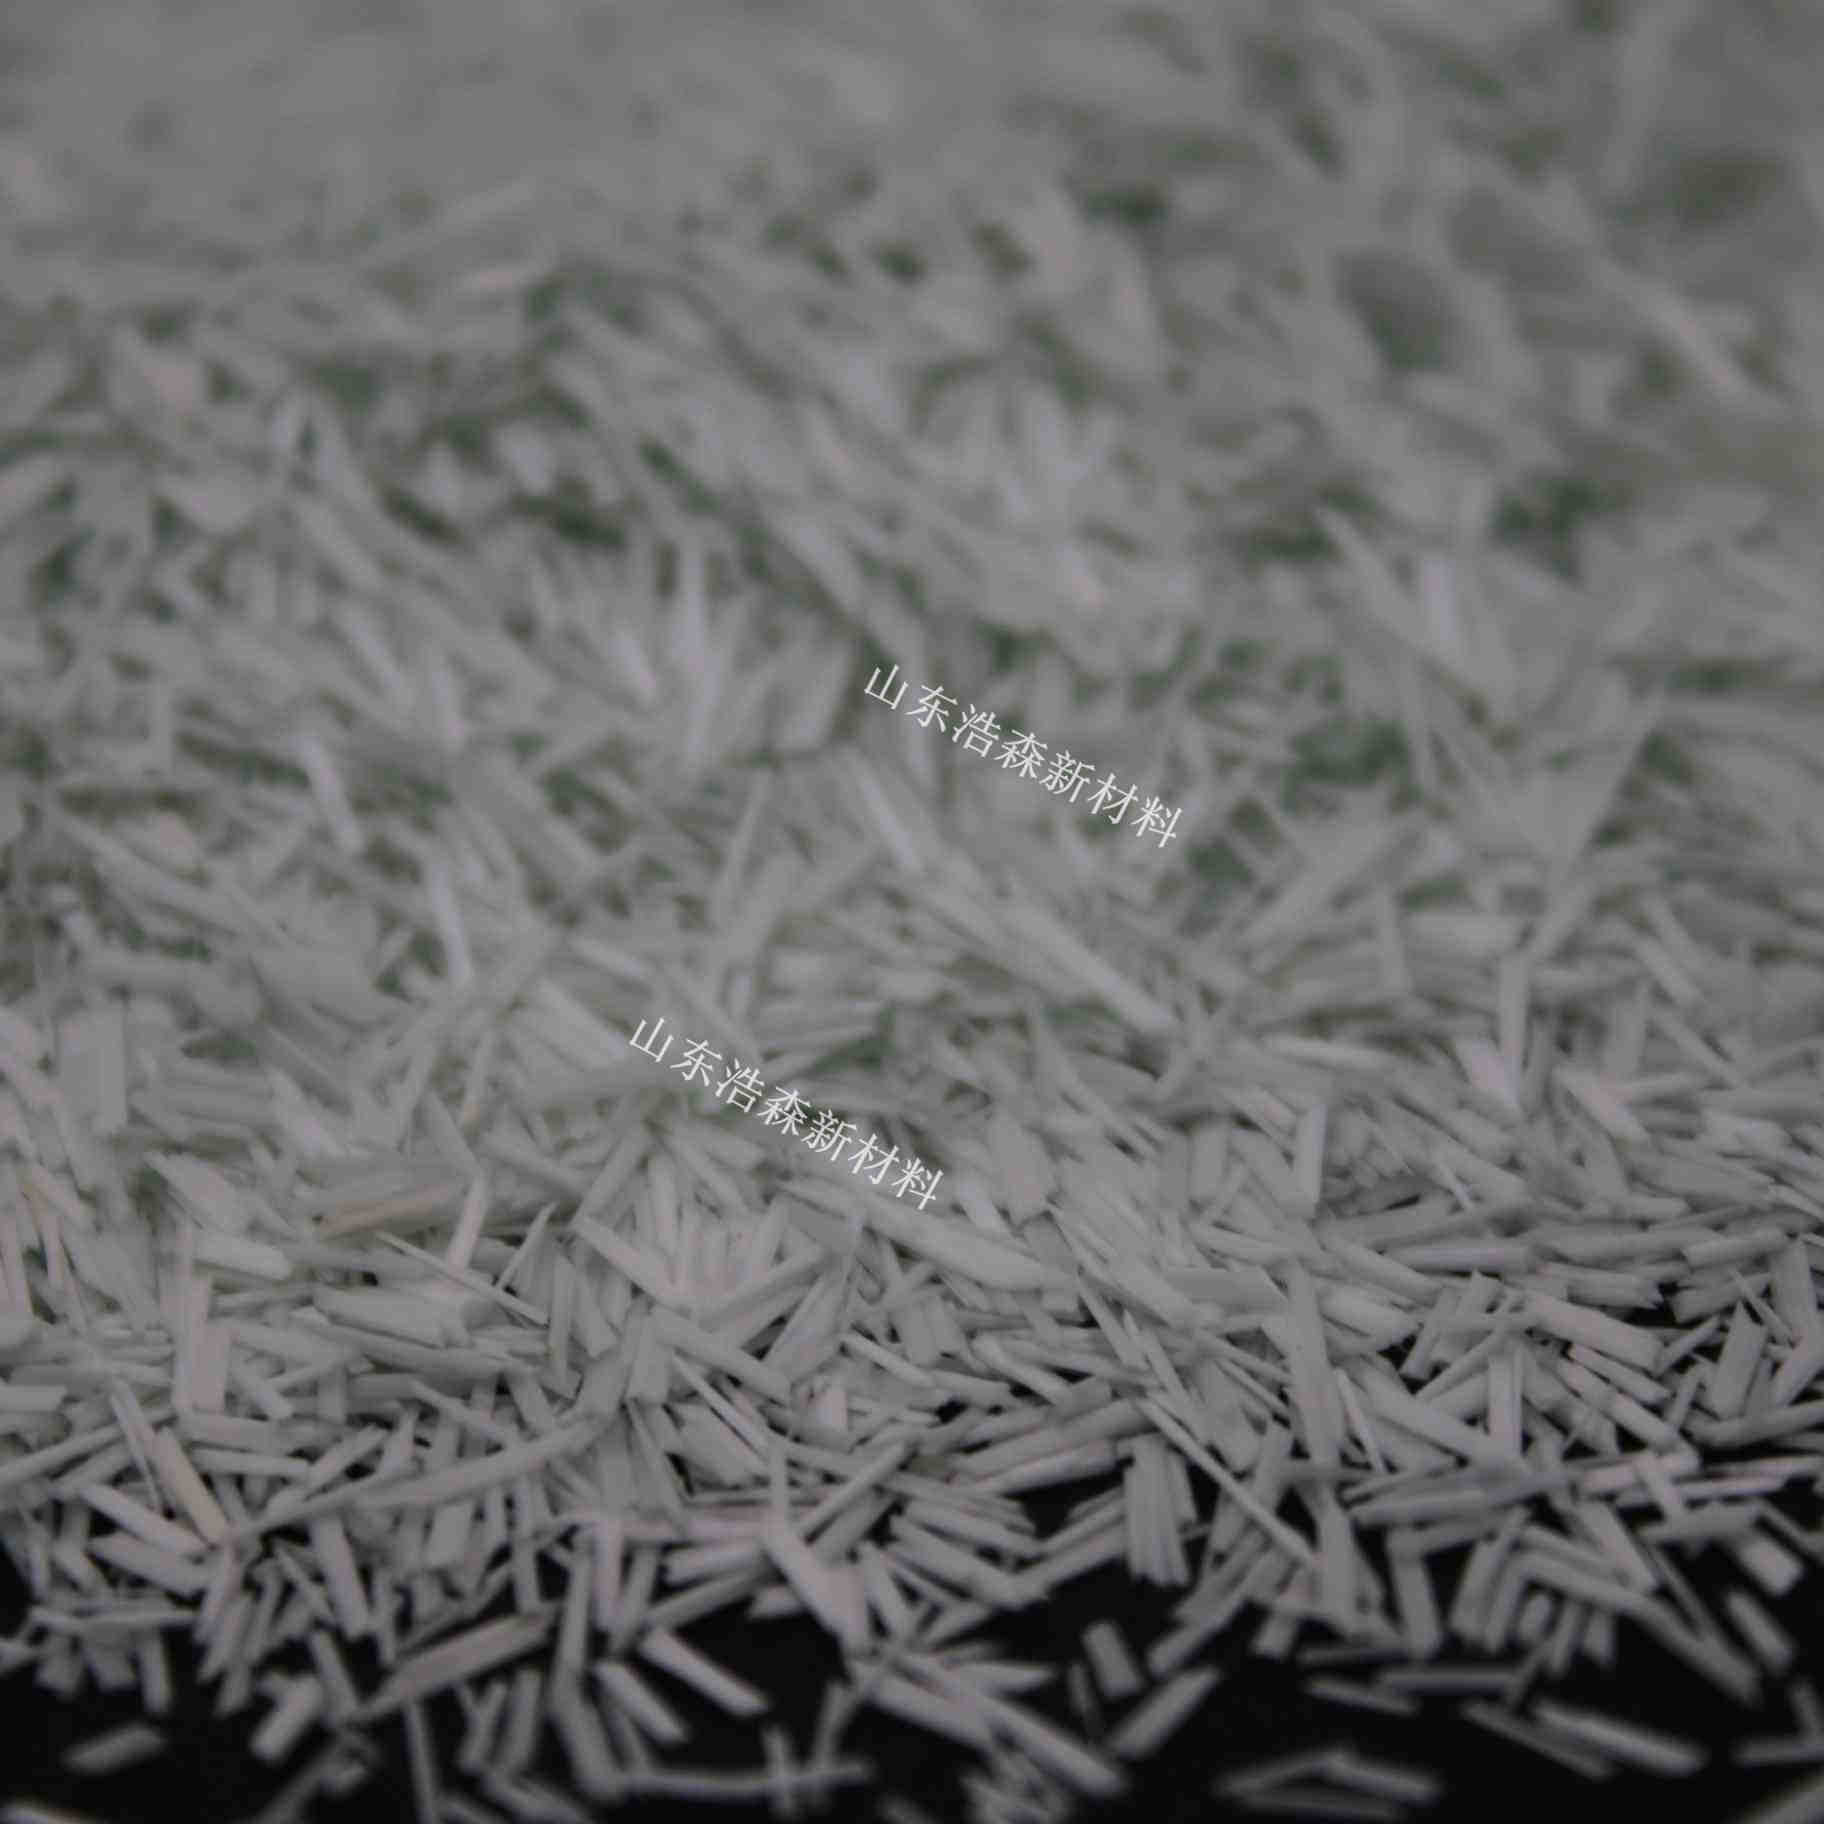 沅陵县化学纤维价格优惠沥青抗冲击聚酯纤维